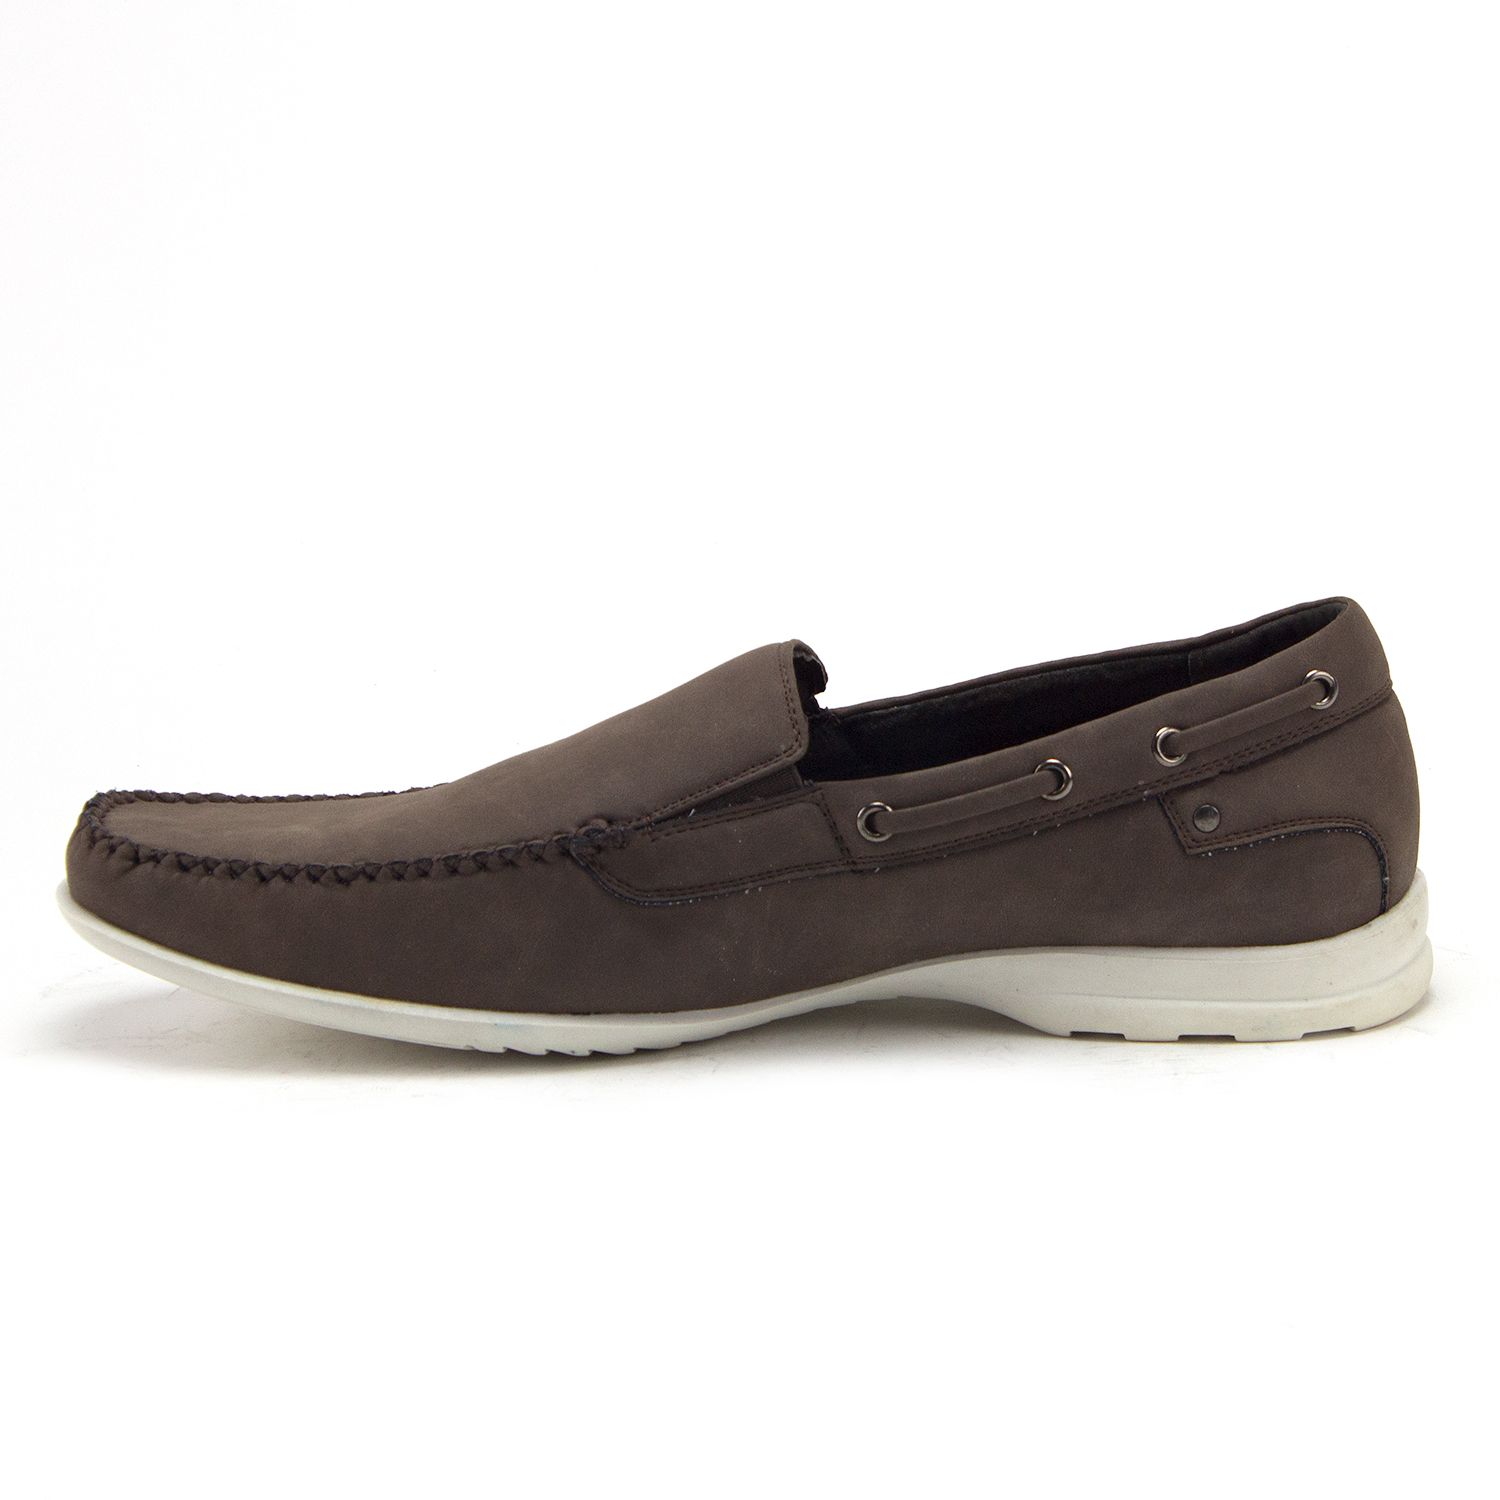 Jazamé Men's 41190 Slip On Moccasin Loafer Boat Shoes, Brown, 11 - image 2 of 3